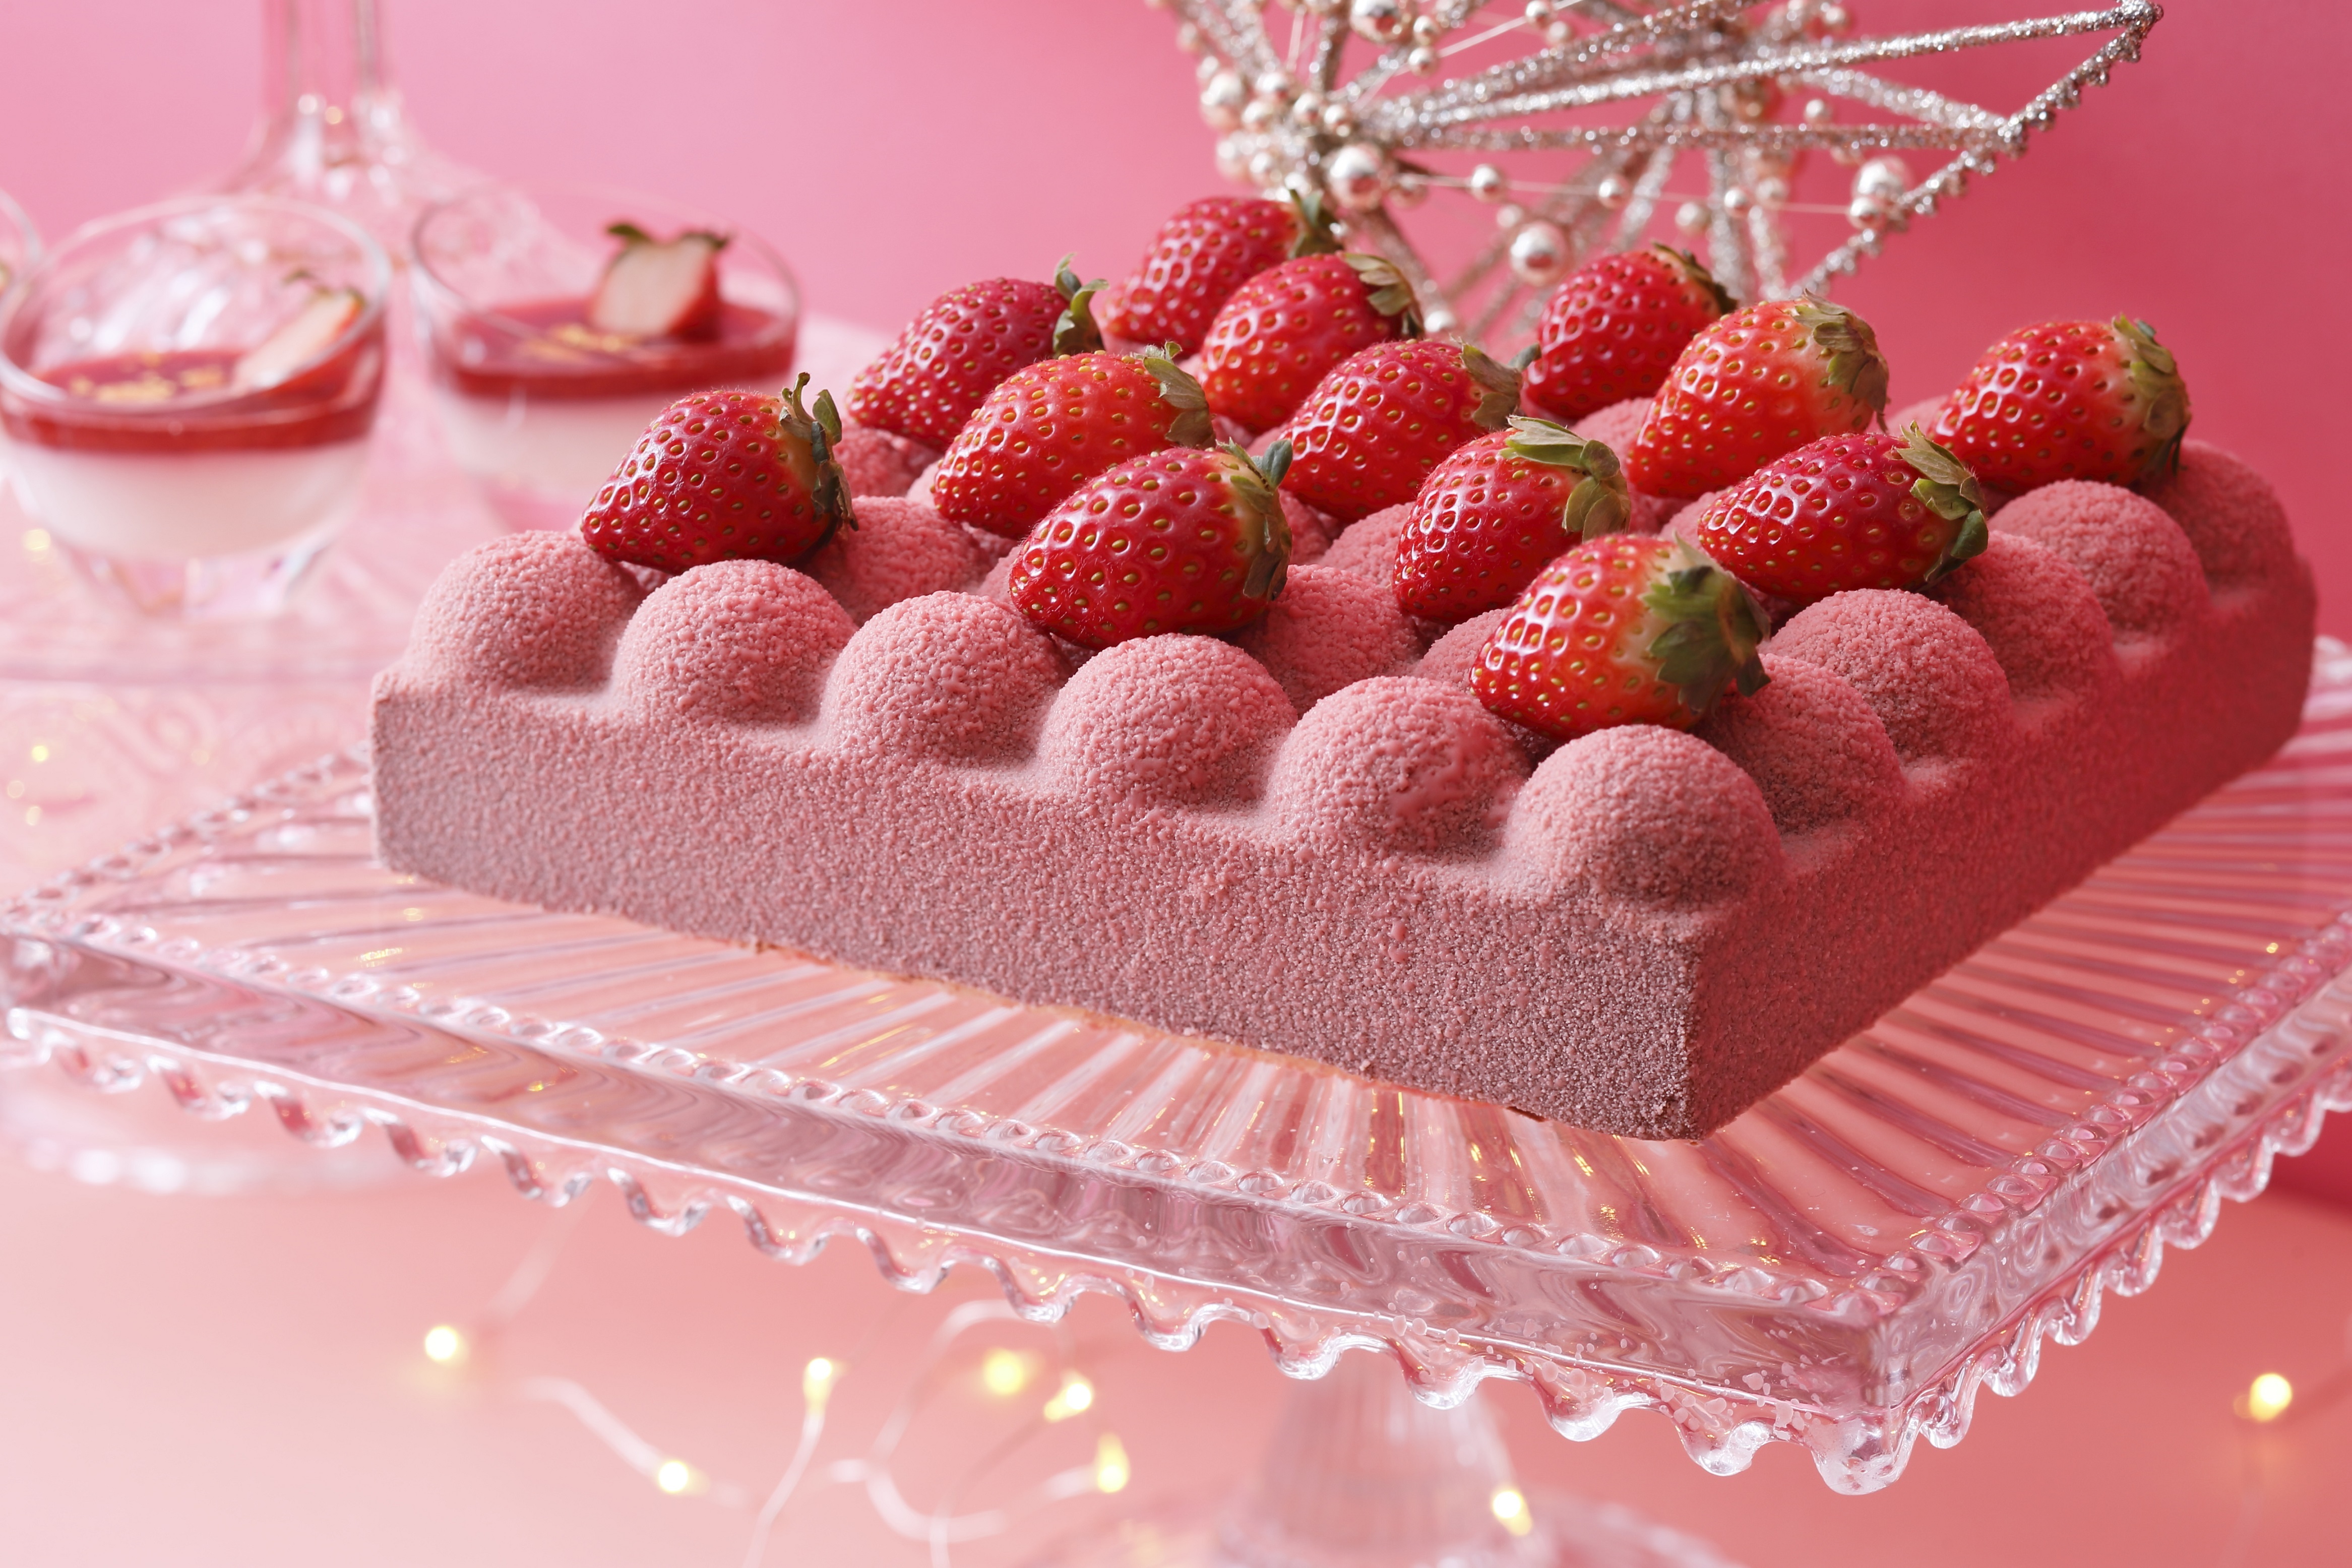 プラネタリウムをテーマにしたストロベリースイーツビュッフェが 京都センチュリーホテルにて1月11日より期間限定開催 Super Strawberry Fair 19 Strawberry Planet あまおう 煌めく 可憐ないちごスイーツが食べ放題 京都センチュリーホテルのプレスリリース